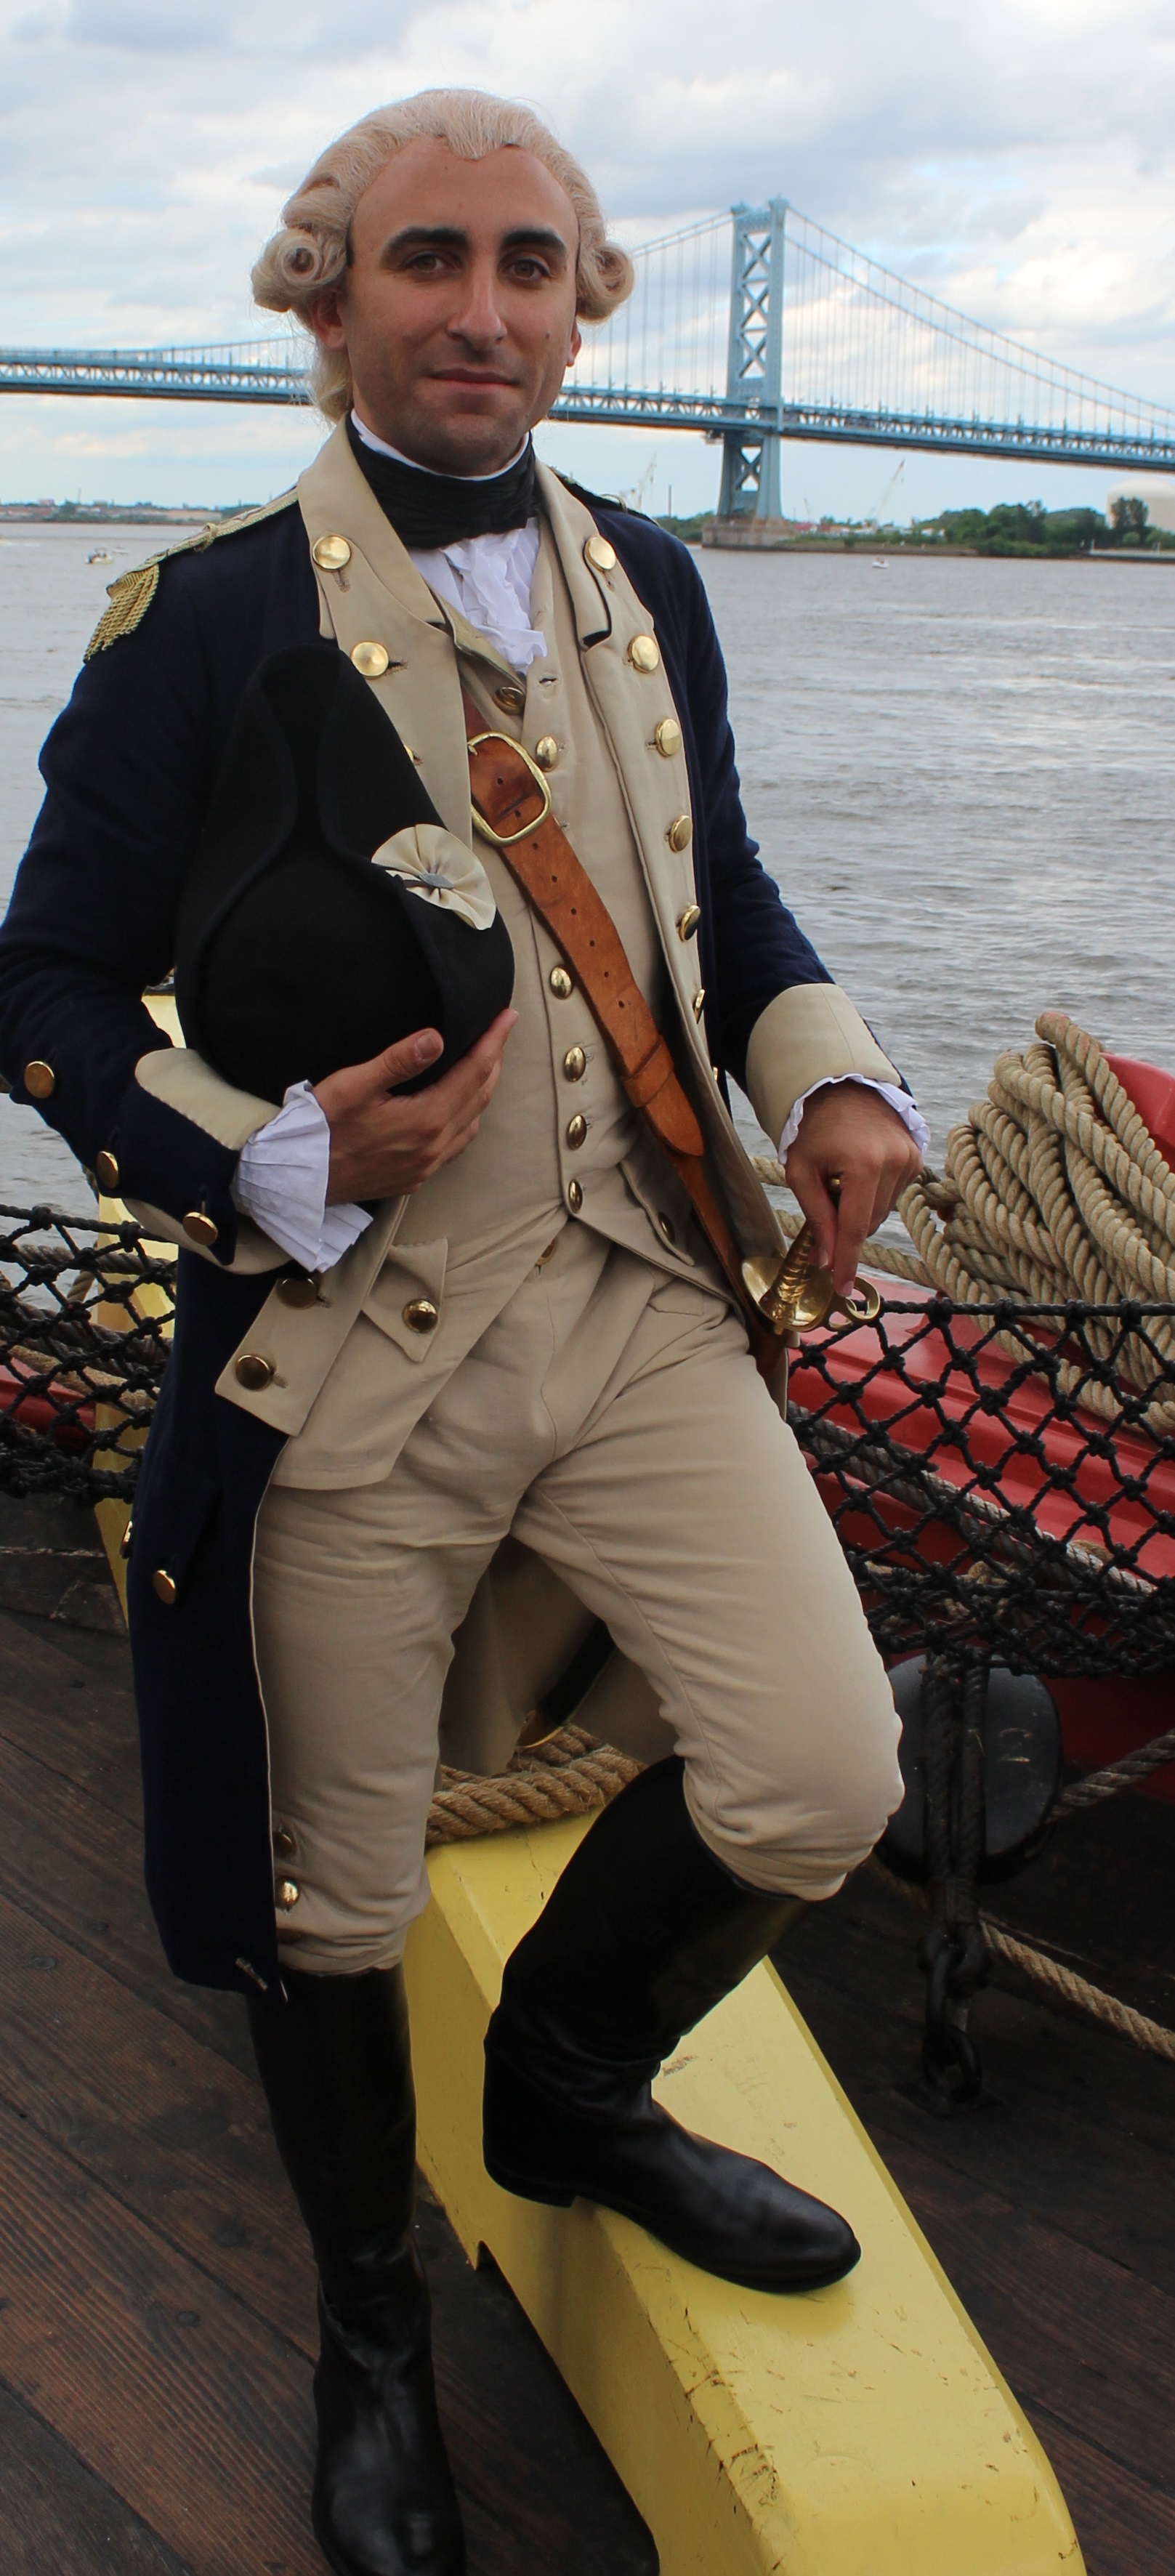 Ben Goldman as Le Marquis de Lafayette